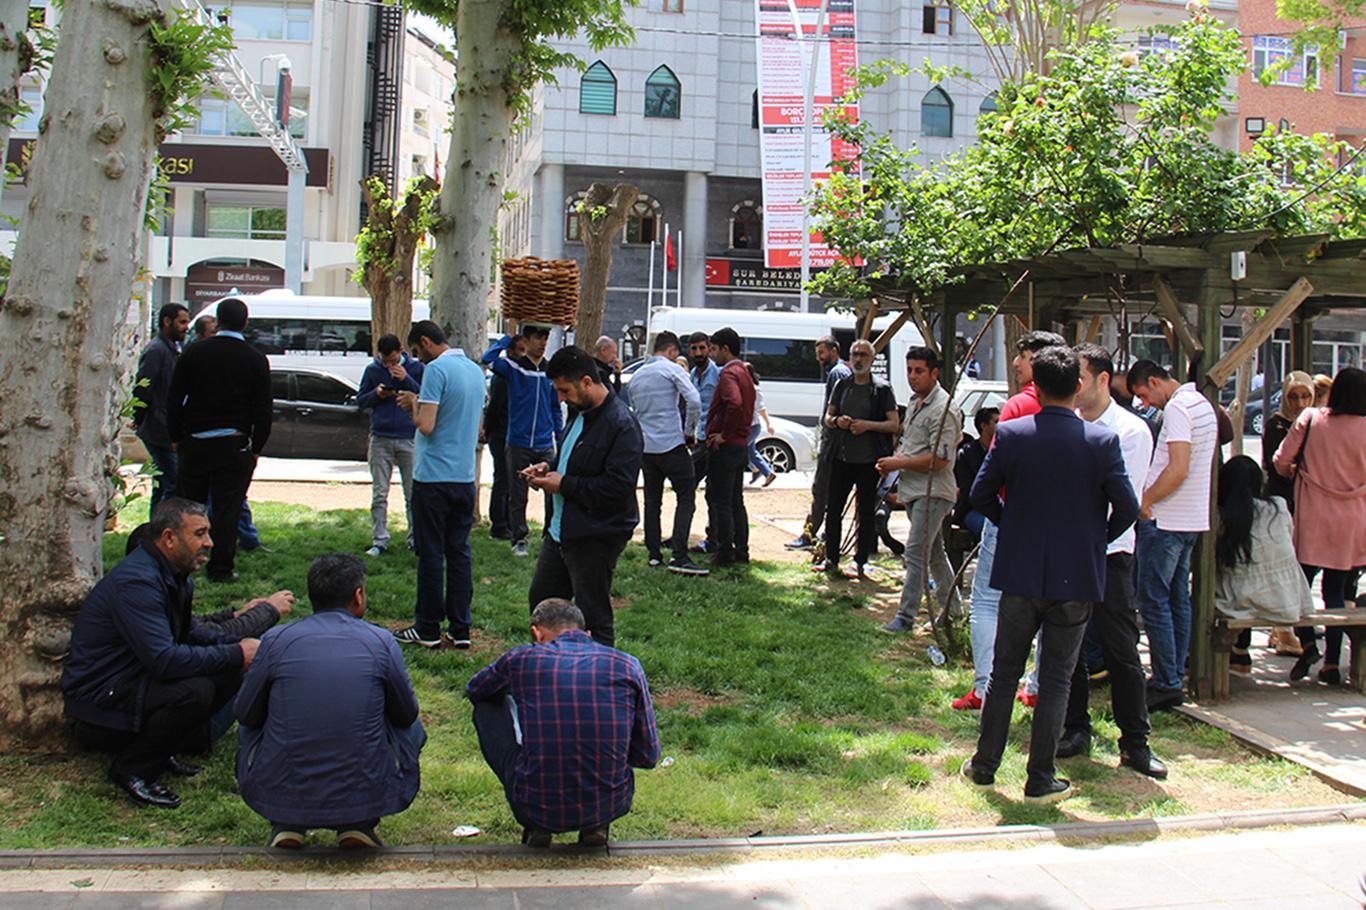 Diyarbakır'da Sur Belediyesi 145 işçiyi işten çıkardı